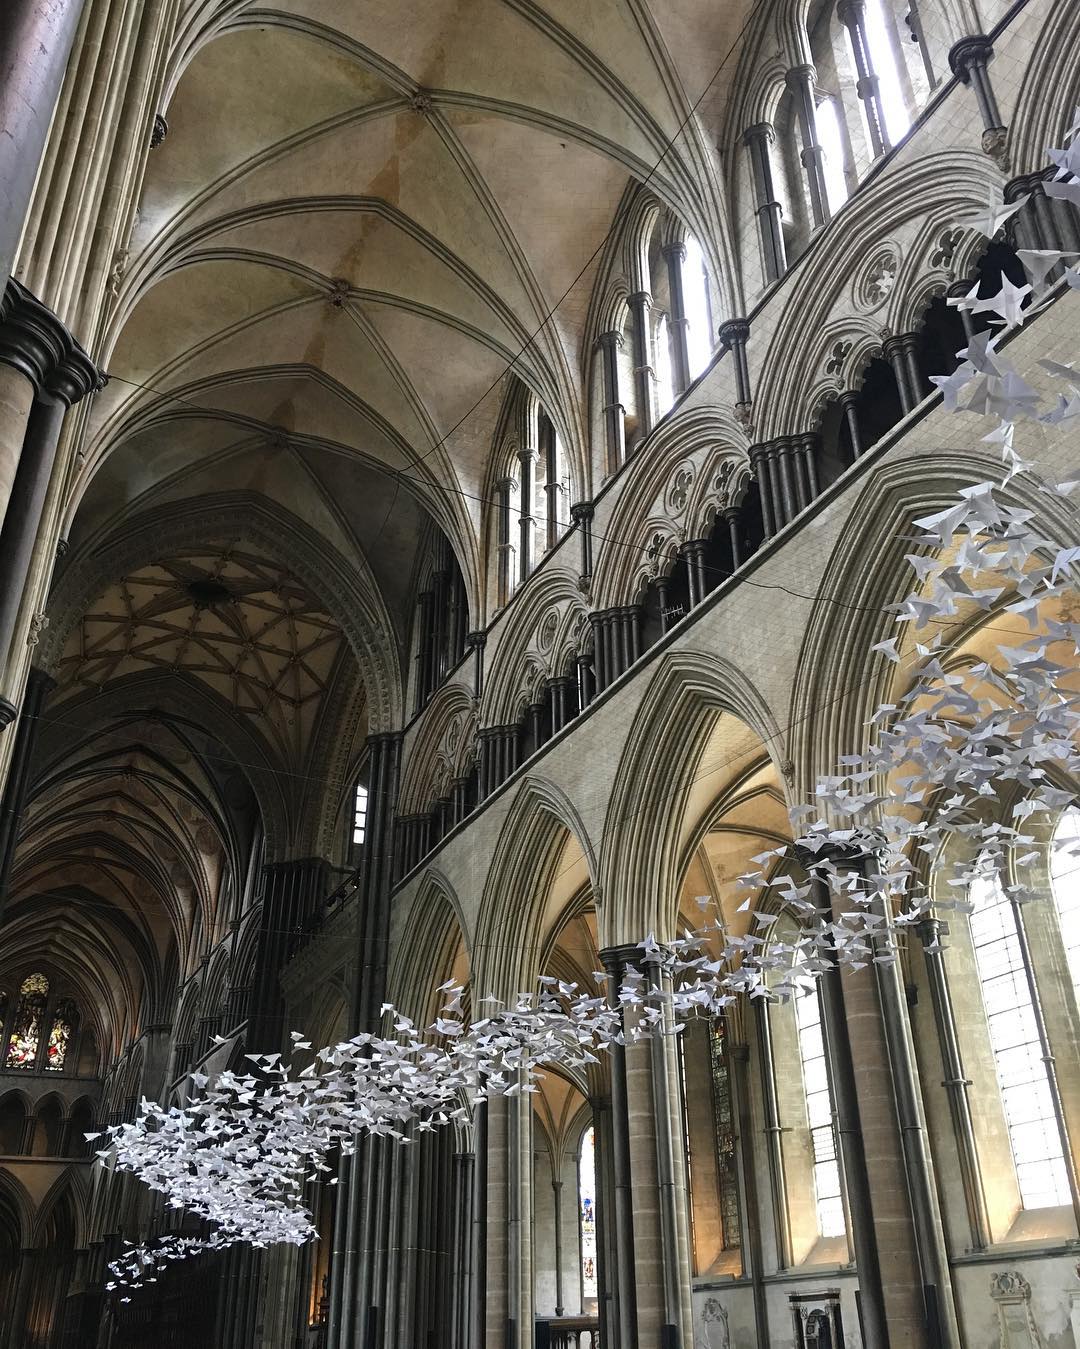 Białe papierowe gołębie zawieszone pod sklepieniem gotyckiego kościoła.